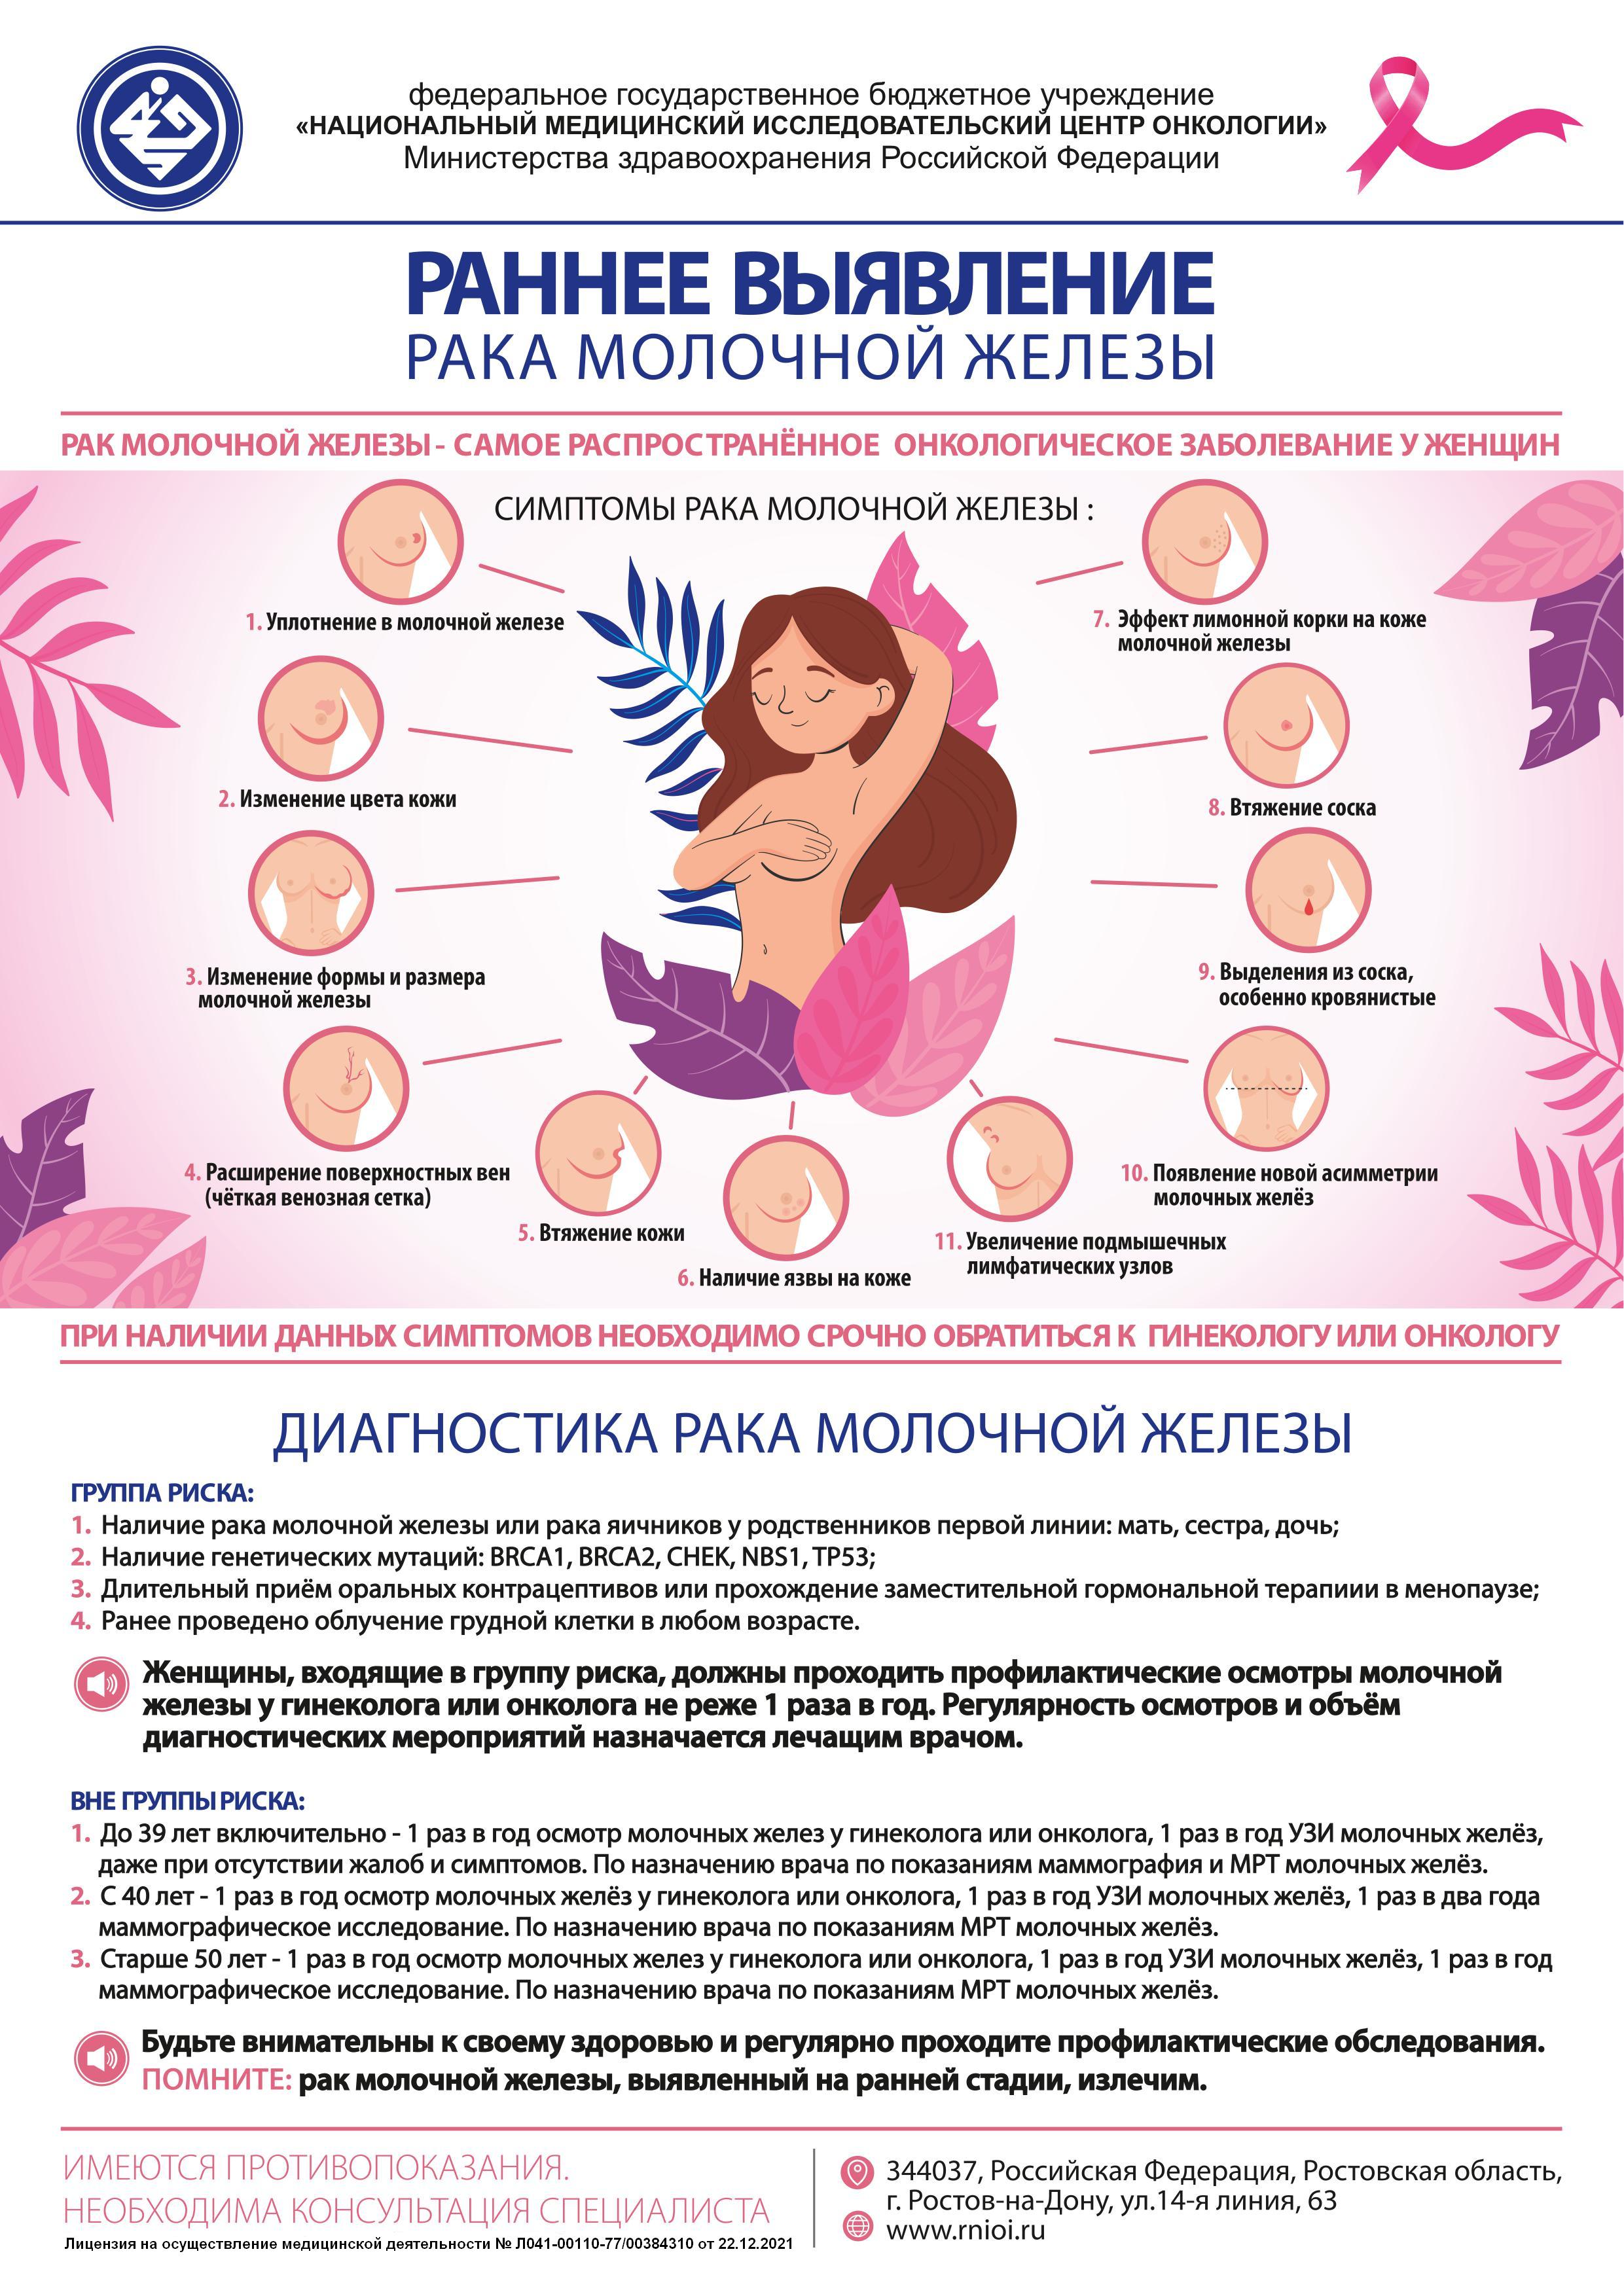 признаки онкологии груди у женщин фото 14